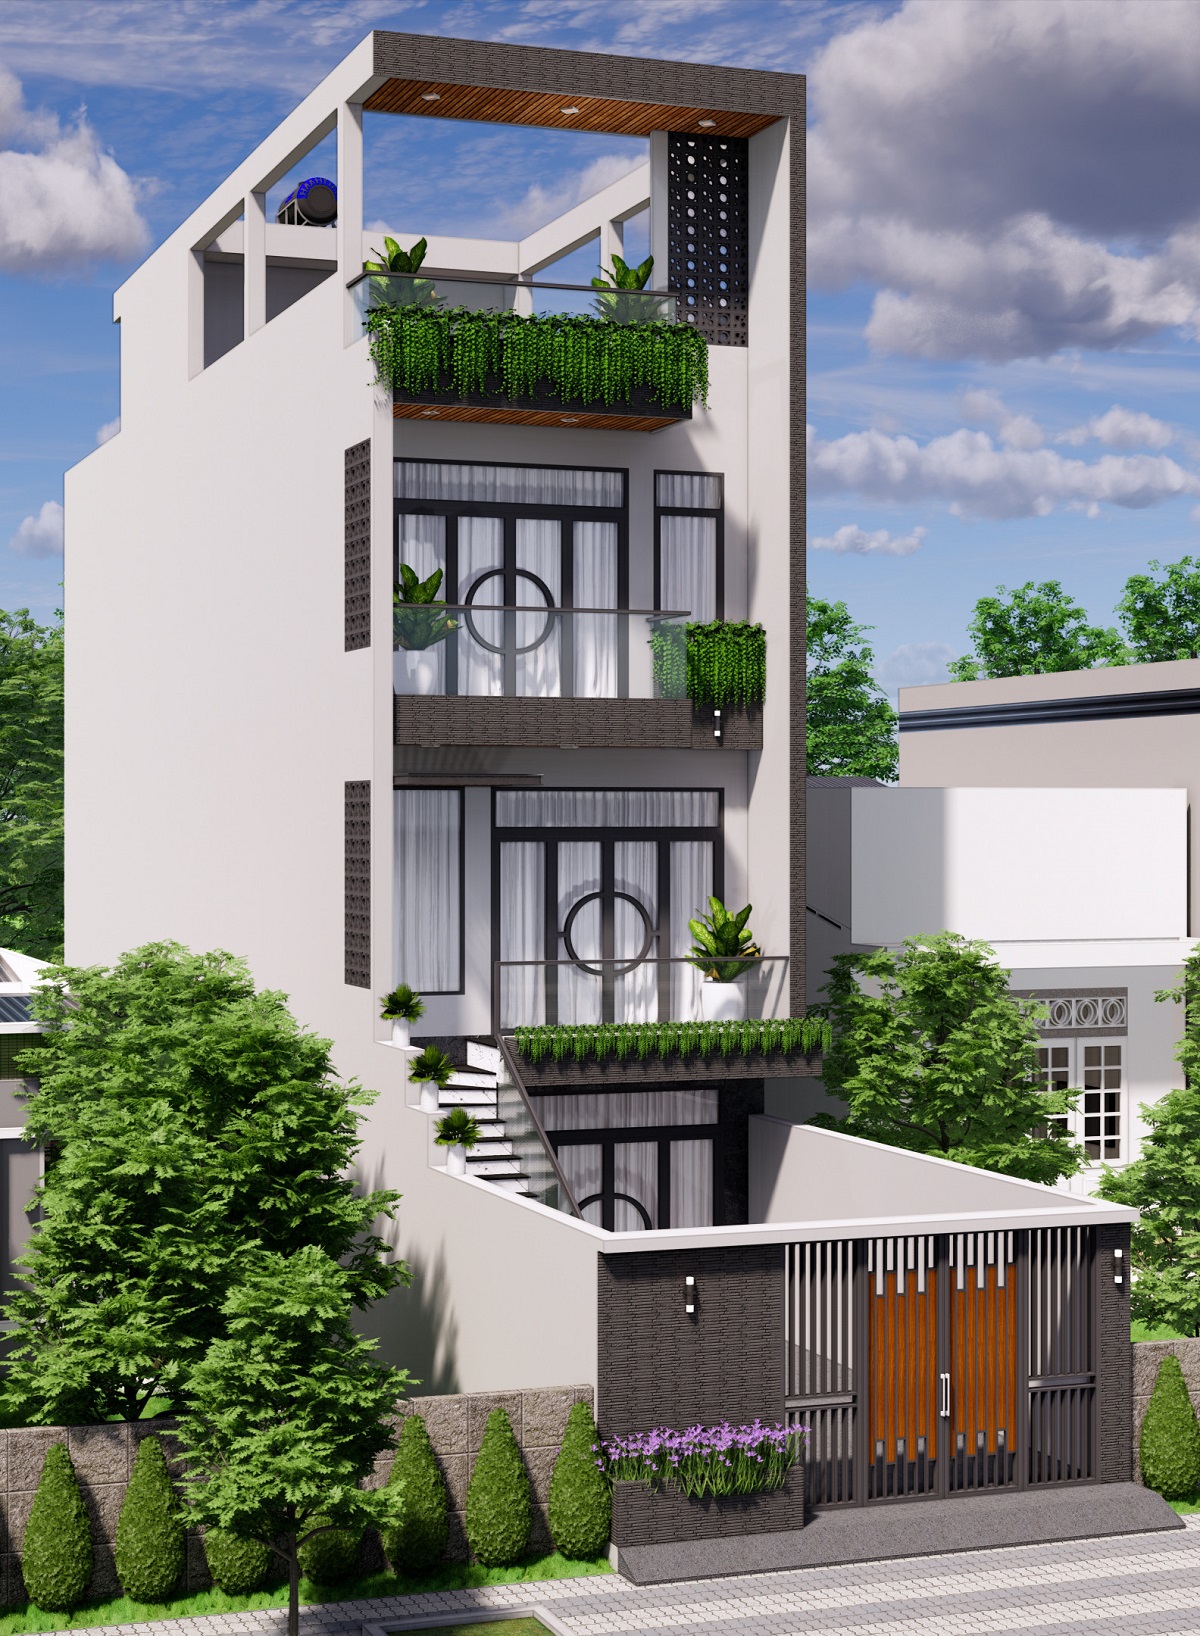 Thiết kế thi công nhà phố hiện đại 2 lầu - Anh Phong - LaGi Bình Thuận